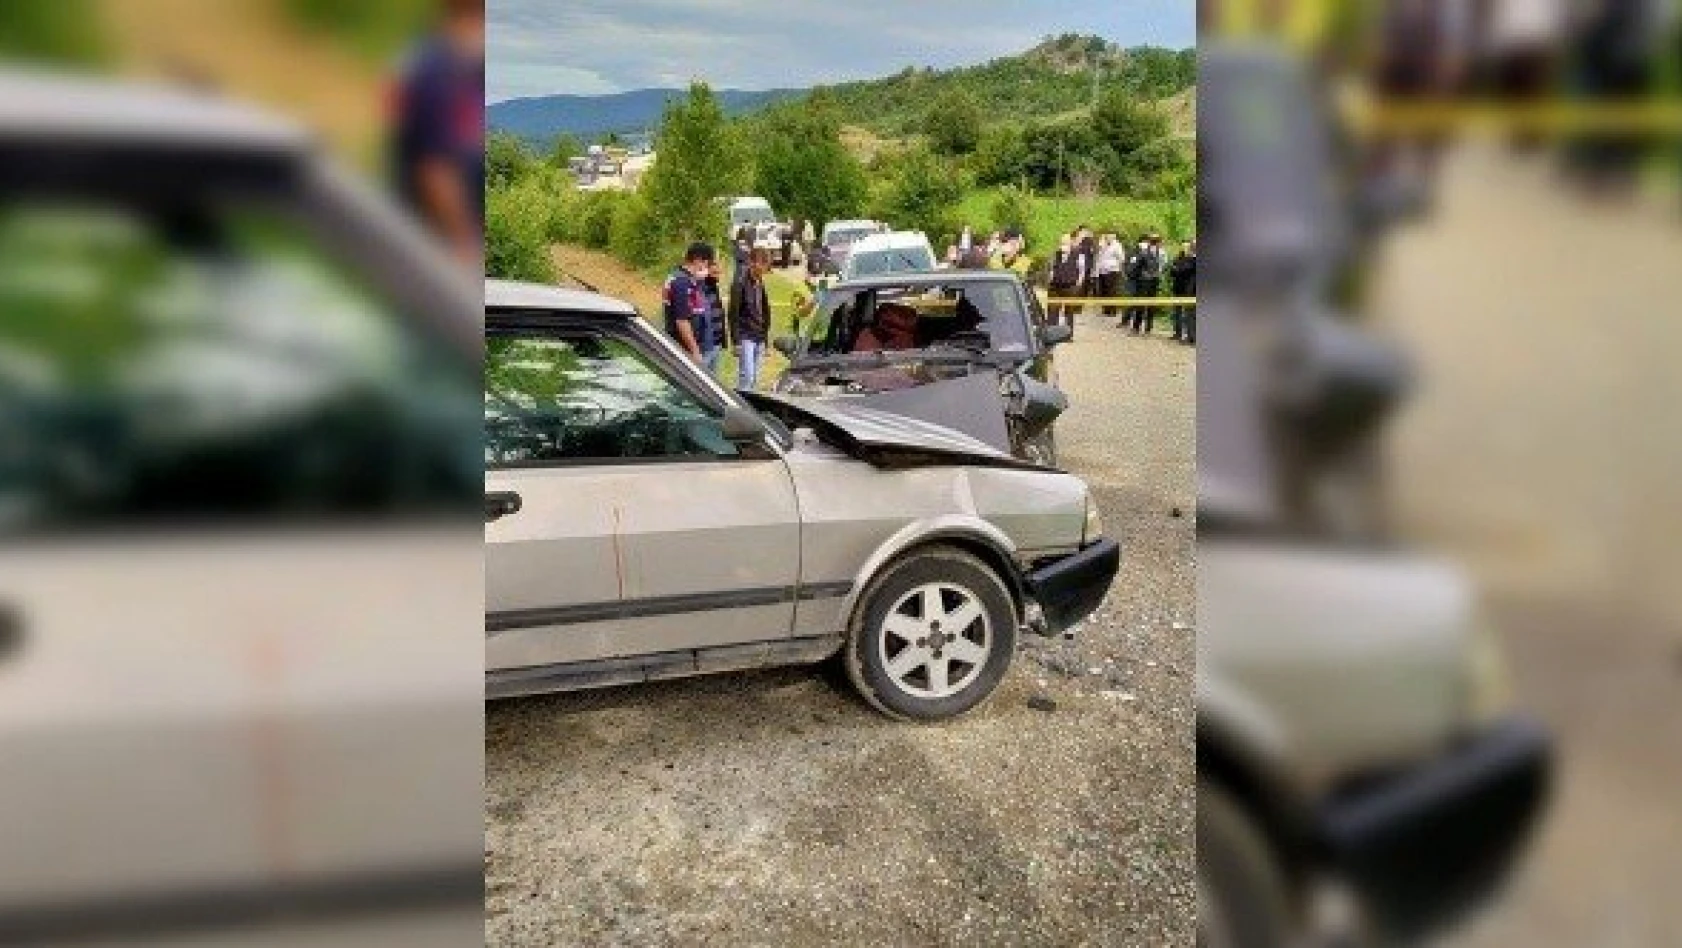 Kastamonu'daki trafik kazasında 5 kişi yaralandı